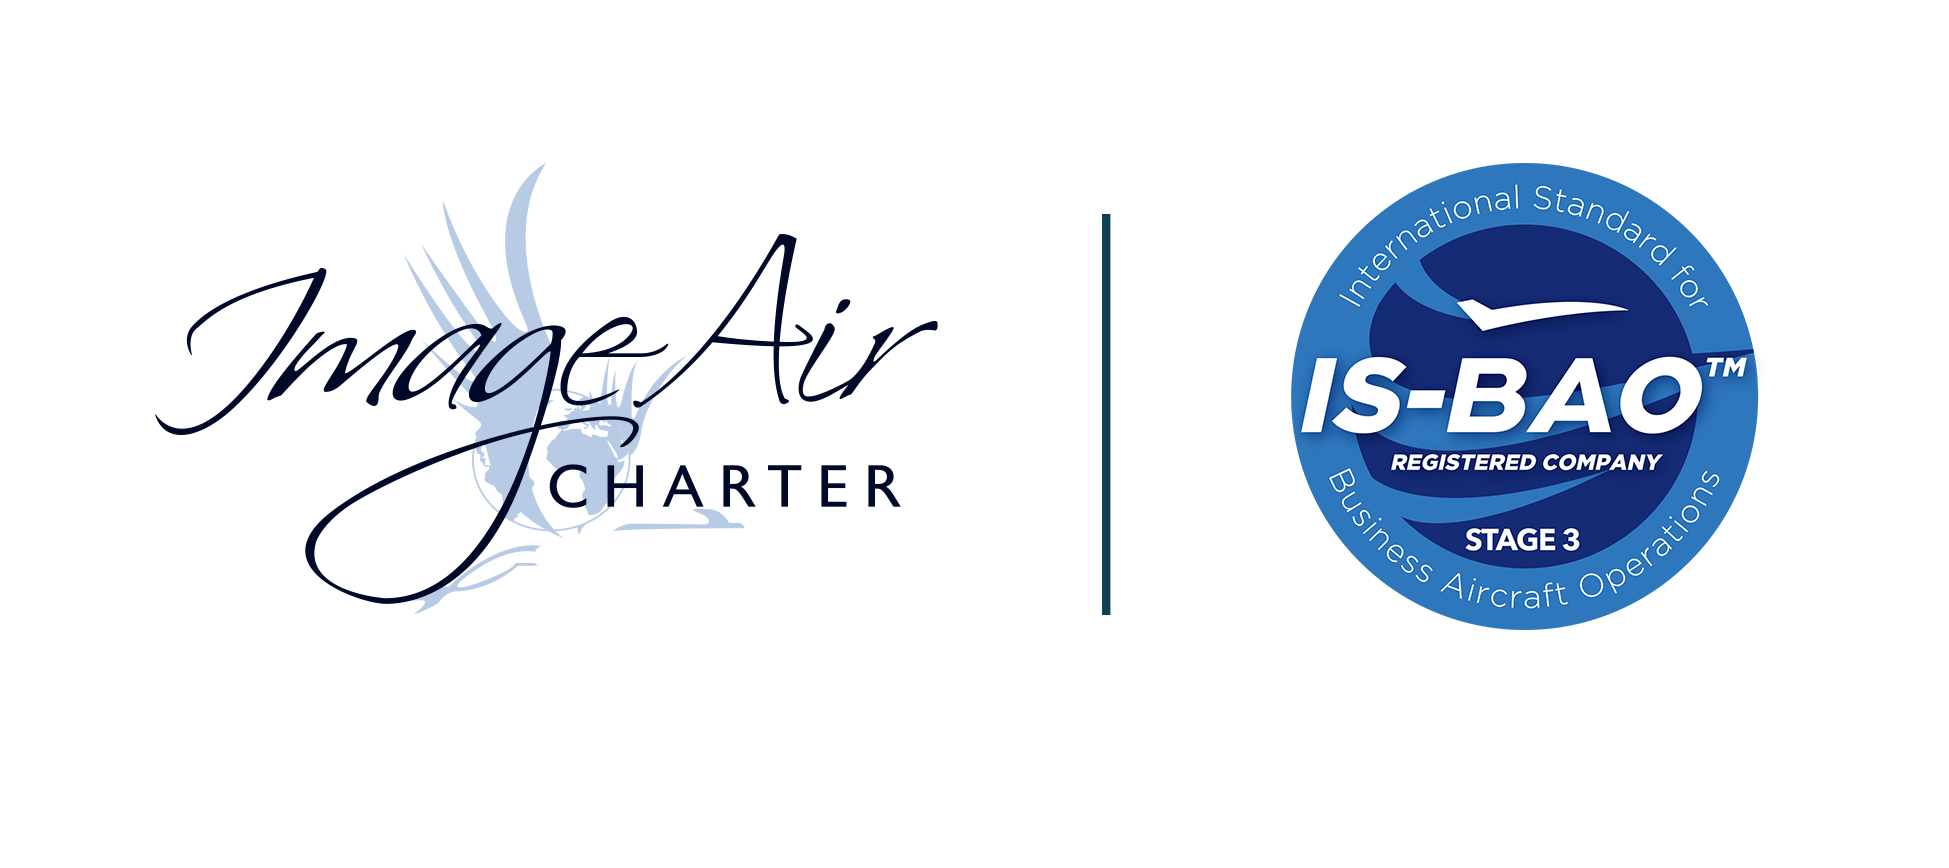 Image Air Charter Ltd reçoit la certification IS-BAO de niveau 3